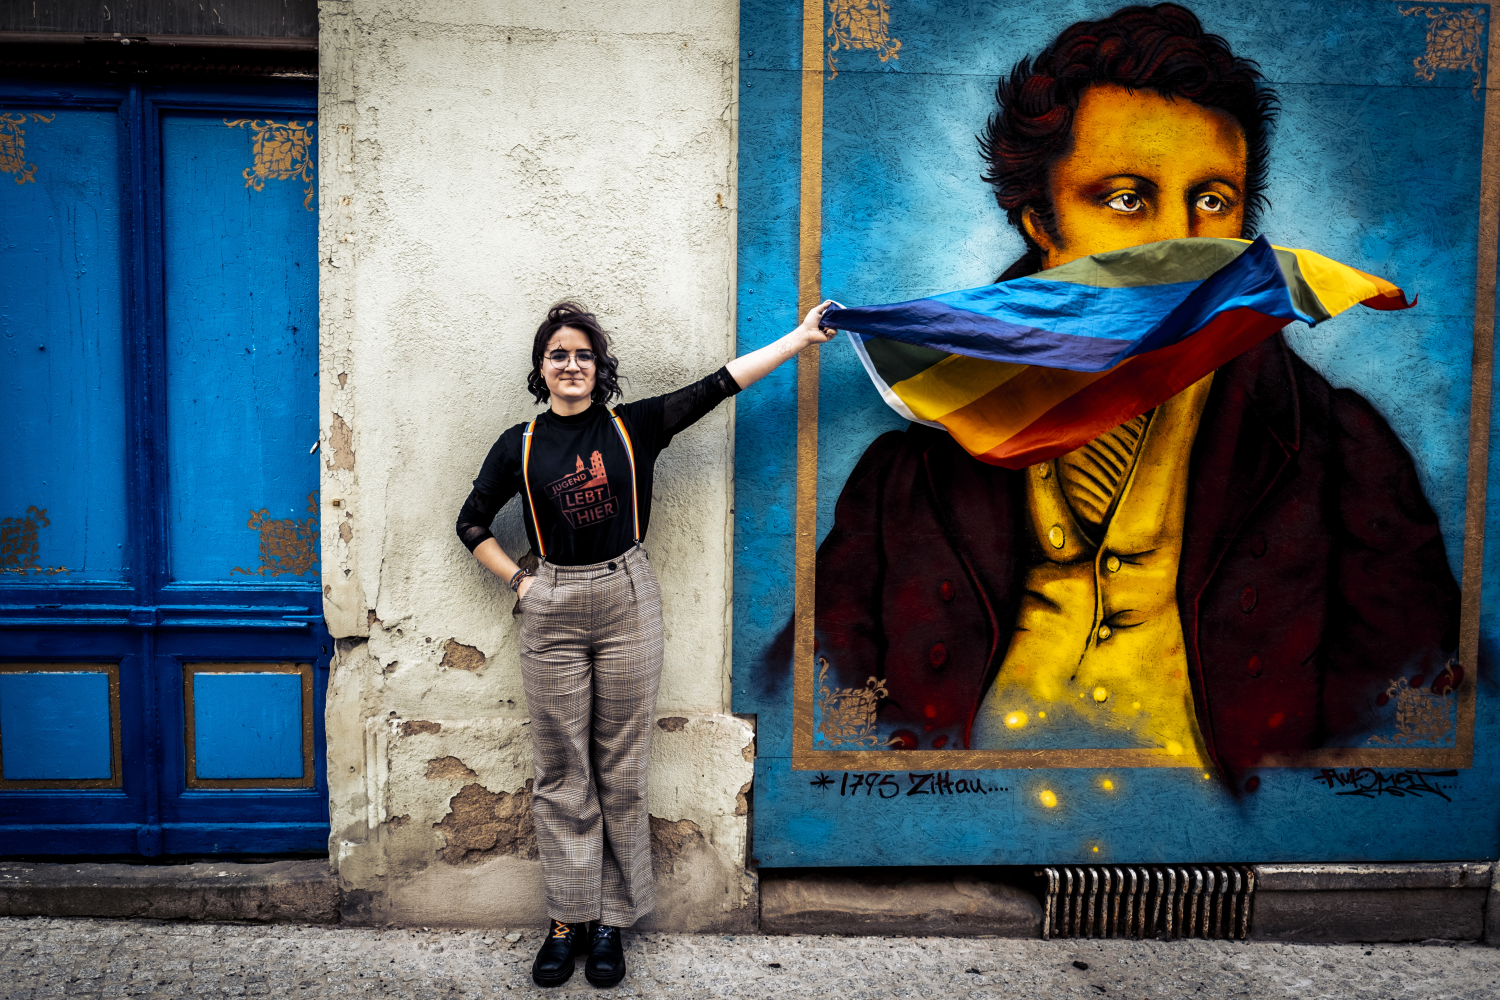 Eine junge Frau mit Regenbogenflagge in der Hand steht vor einer Wand. Auf der Wand ist ein Mann in Kleidung des 18. Jahrhunderts abgebildet. Die Frau lässt die Flagge über sein Gesicht wehen.